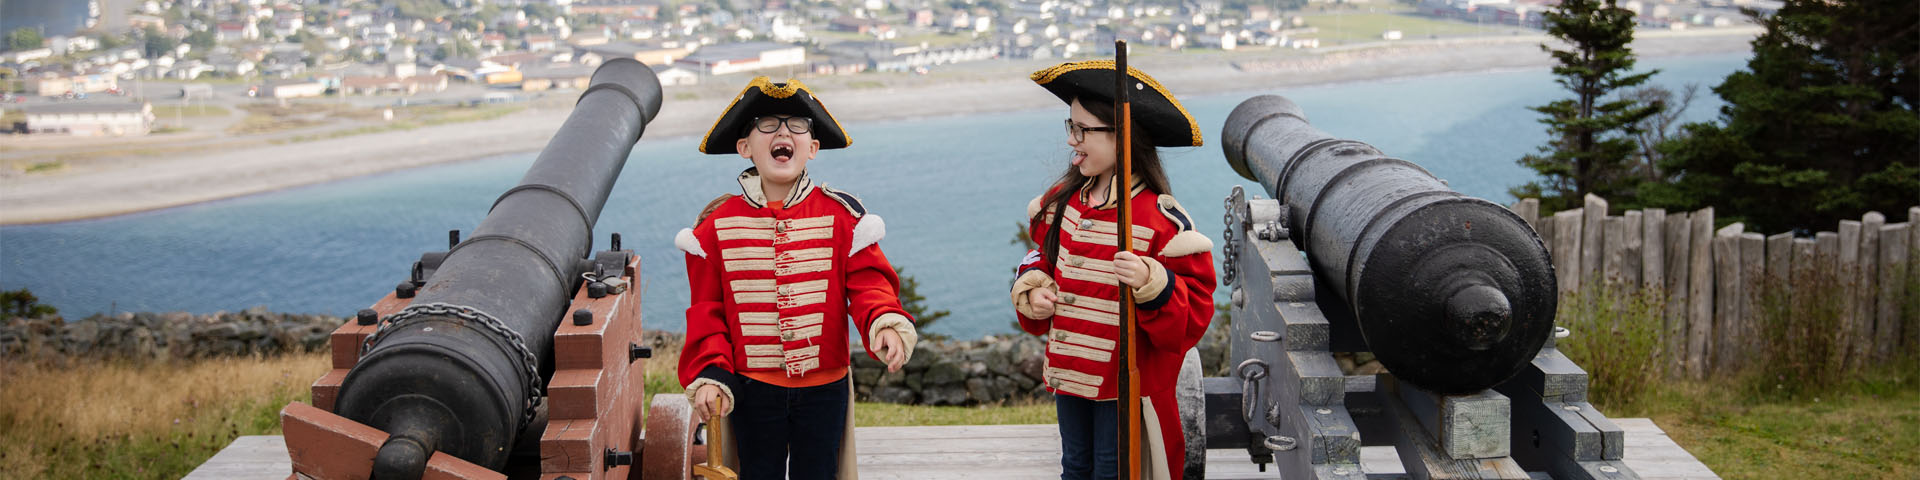 deux enfants en costume militaire historique riant à côté de deux canons surplombant une ville côtière